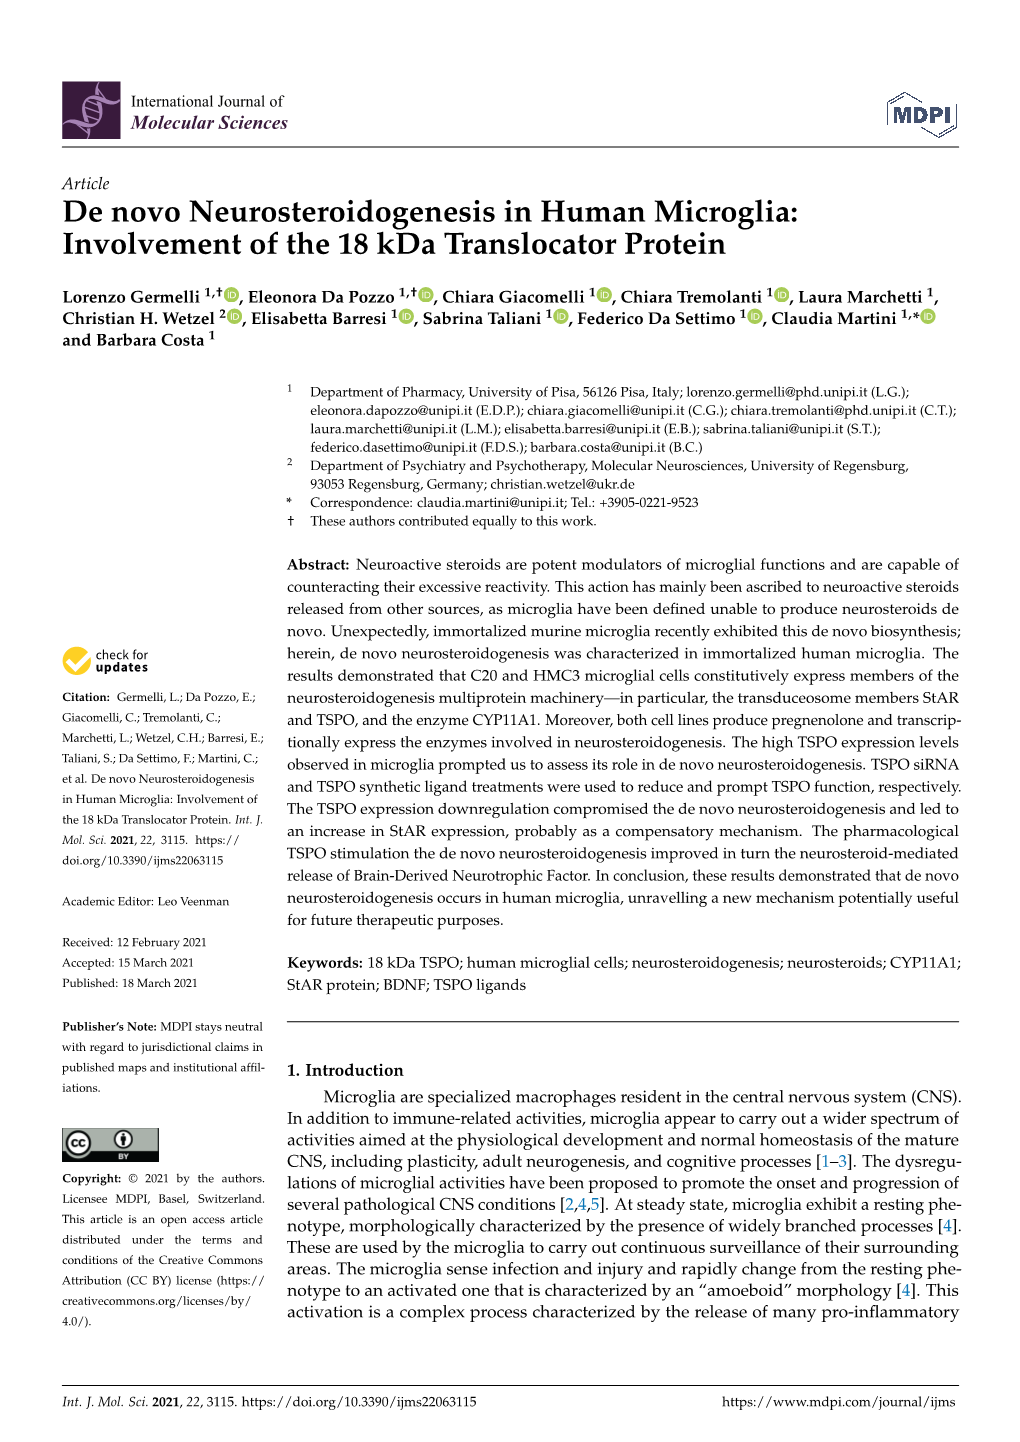 De Novo Neurosteroidogenesis in Human Microglia: Involvement of the 18 Kda Translocator Protein